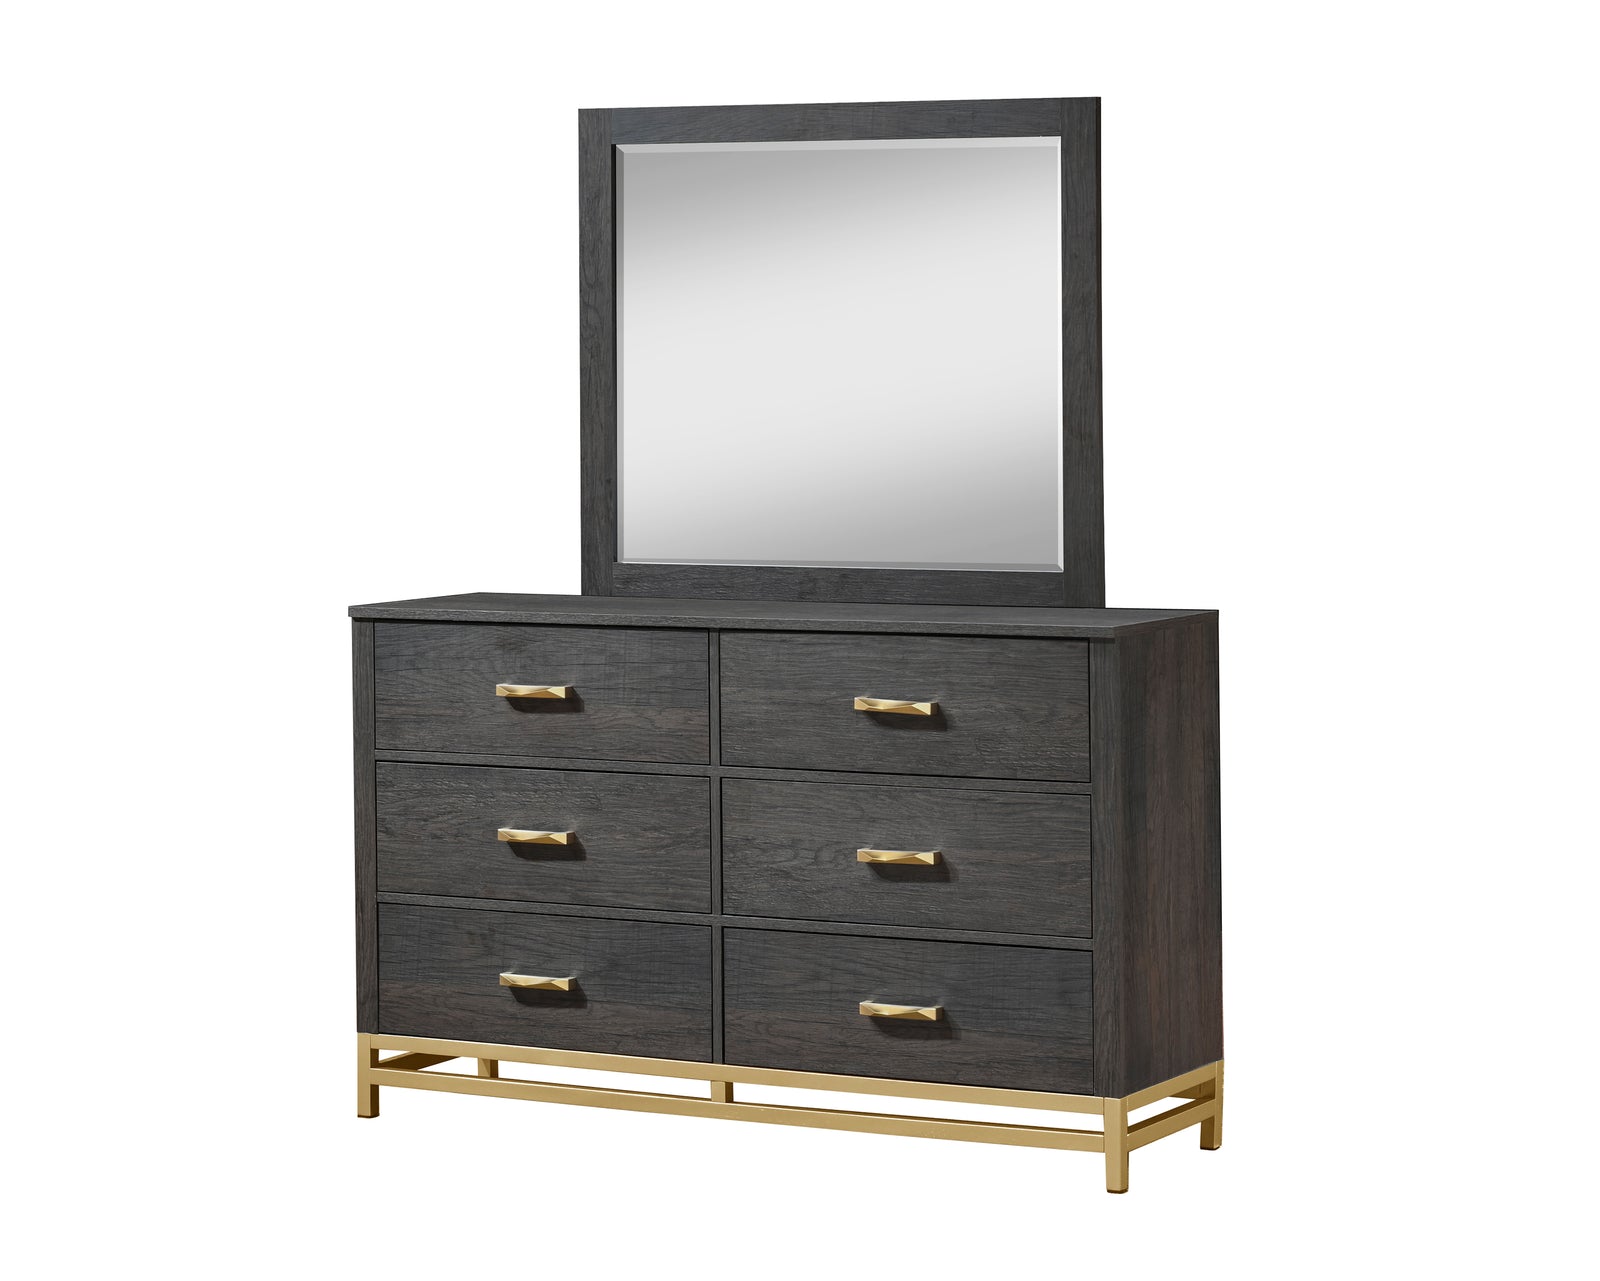 Trevor Dark Brown Modern Contemporary Solid Wood And Veneers 6-Drawers Dresser